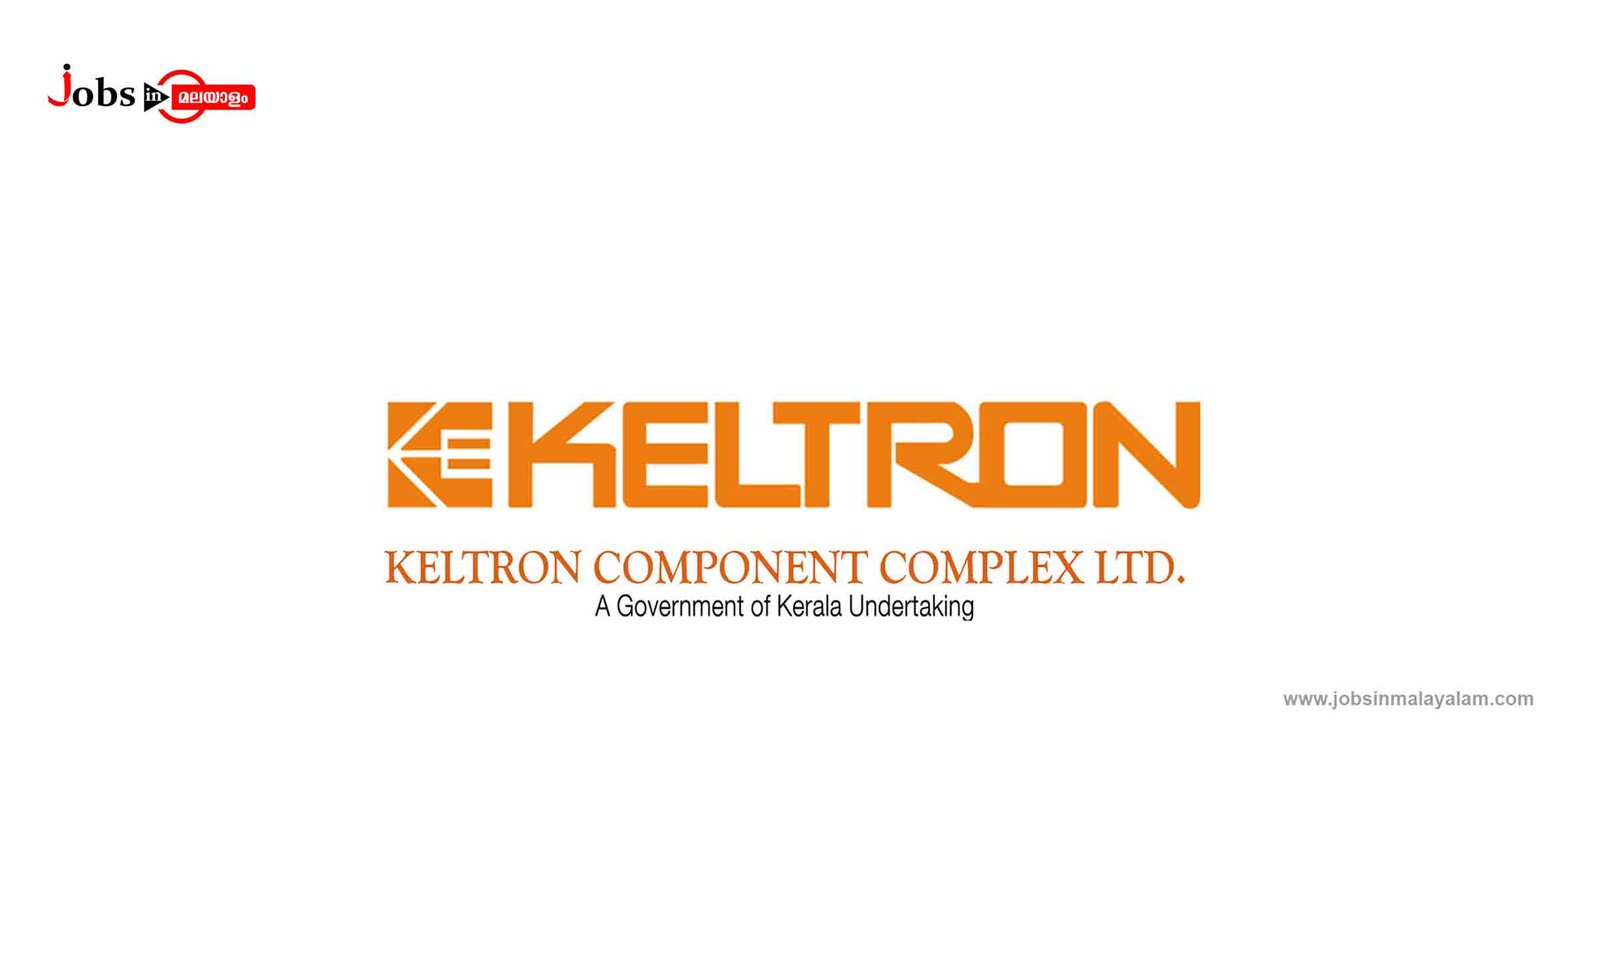 Keltron Component Complex Ltd